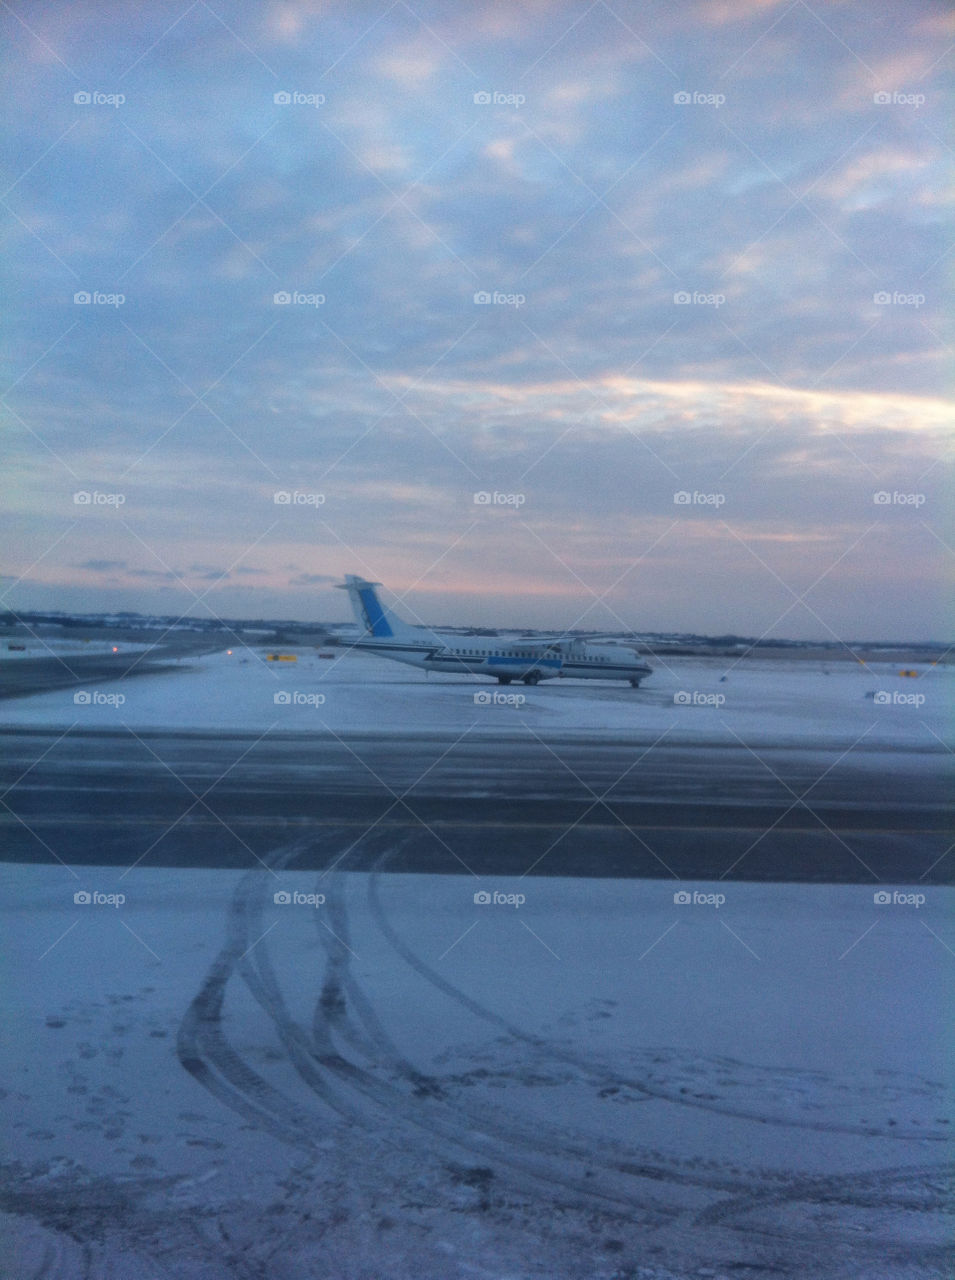 Sne i Sønderborg Lufthavn